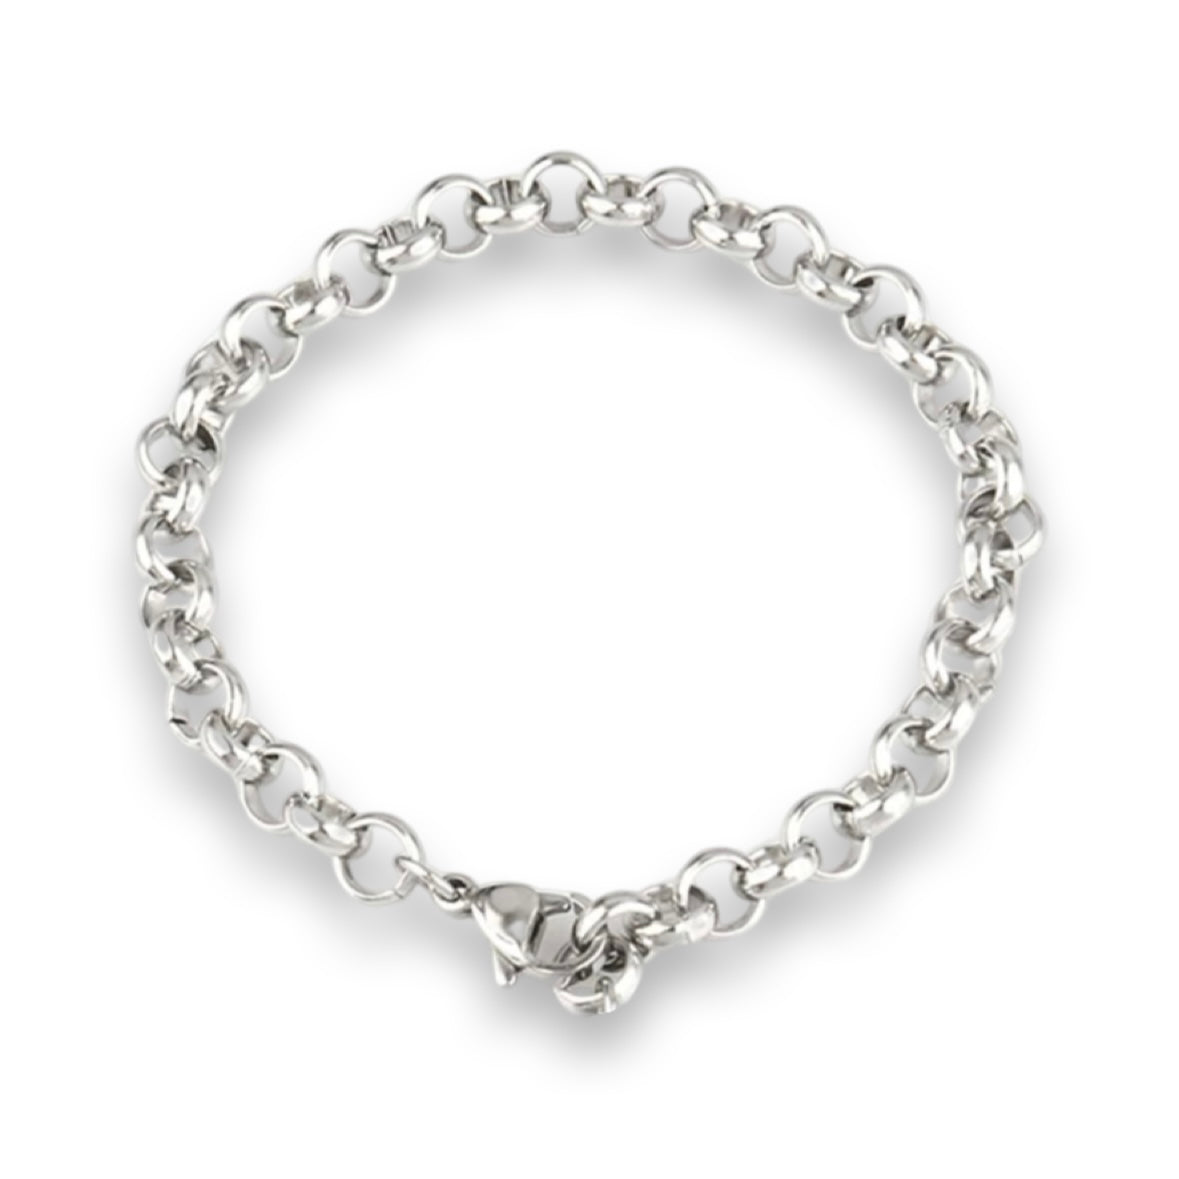 No.3 Silver Bracelet